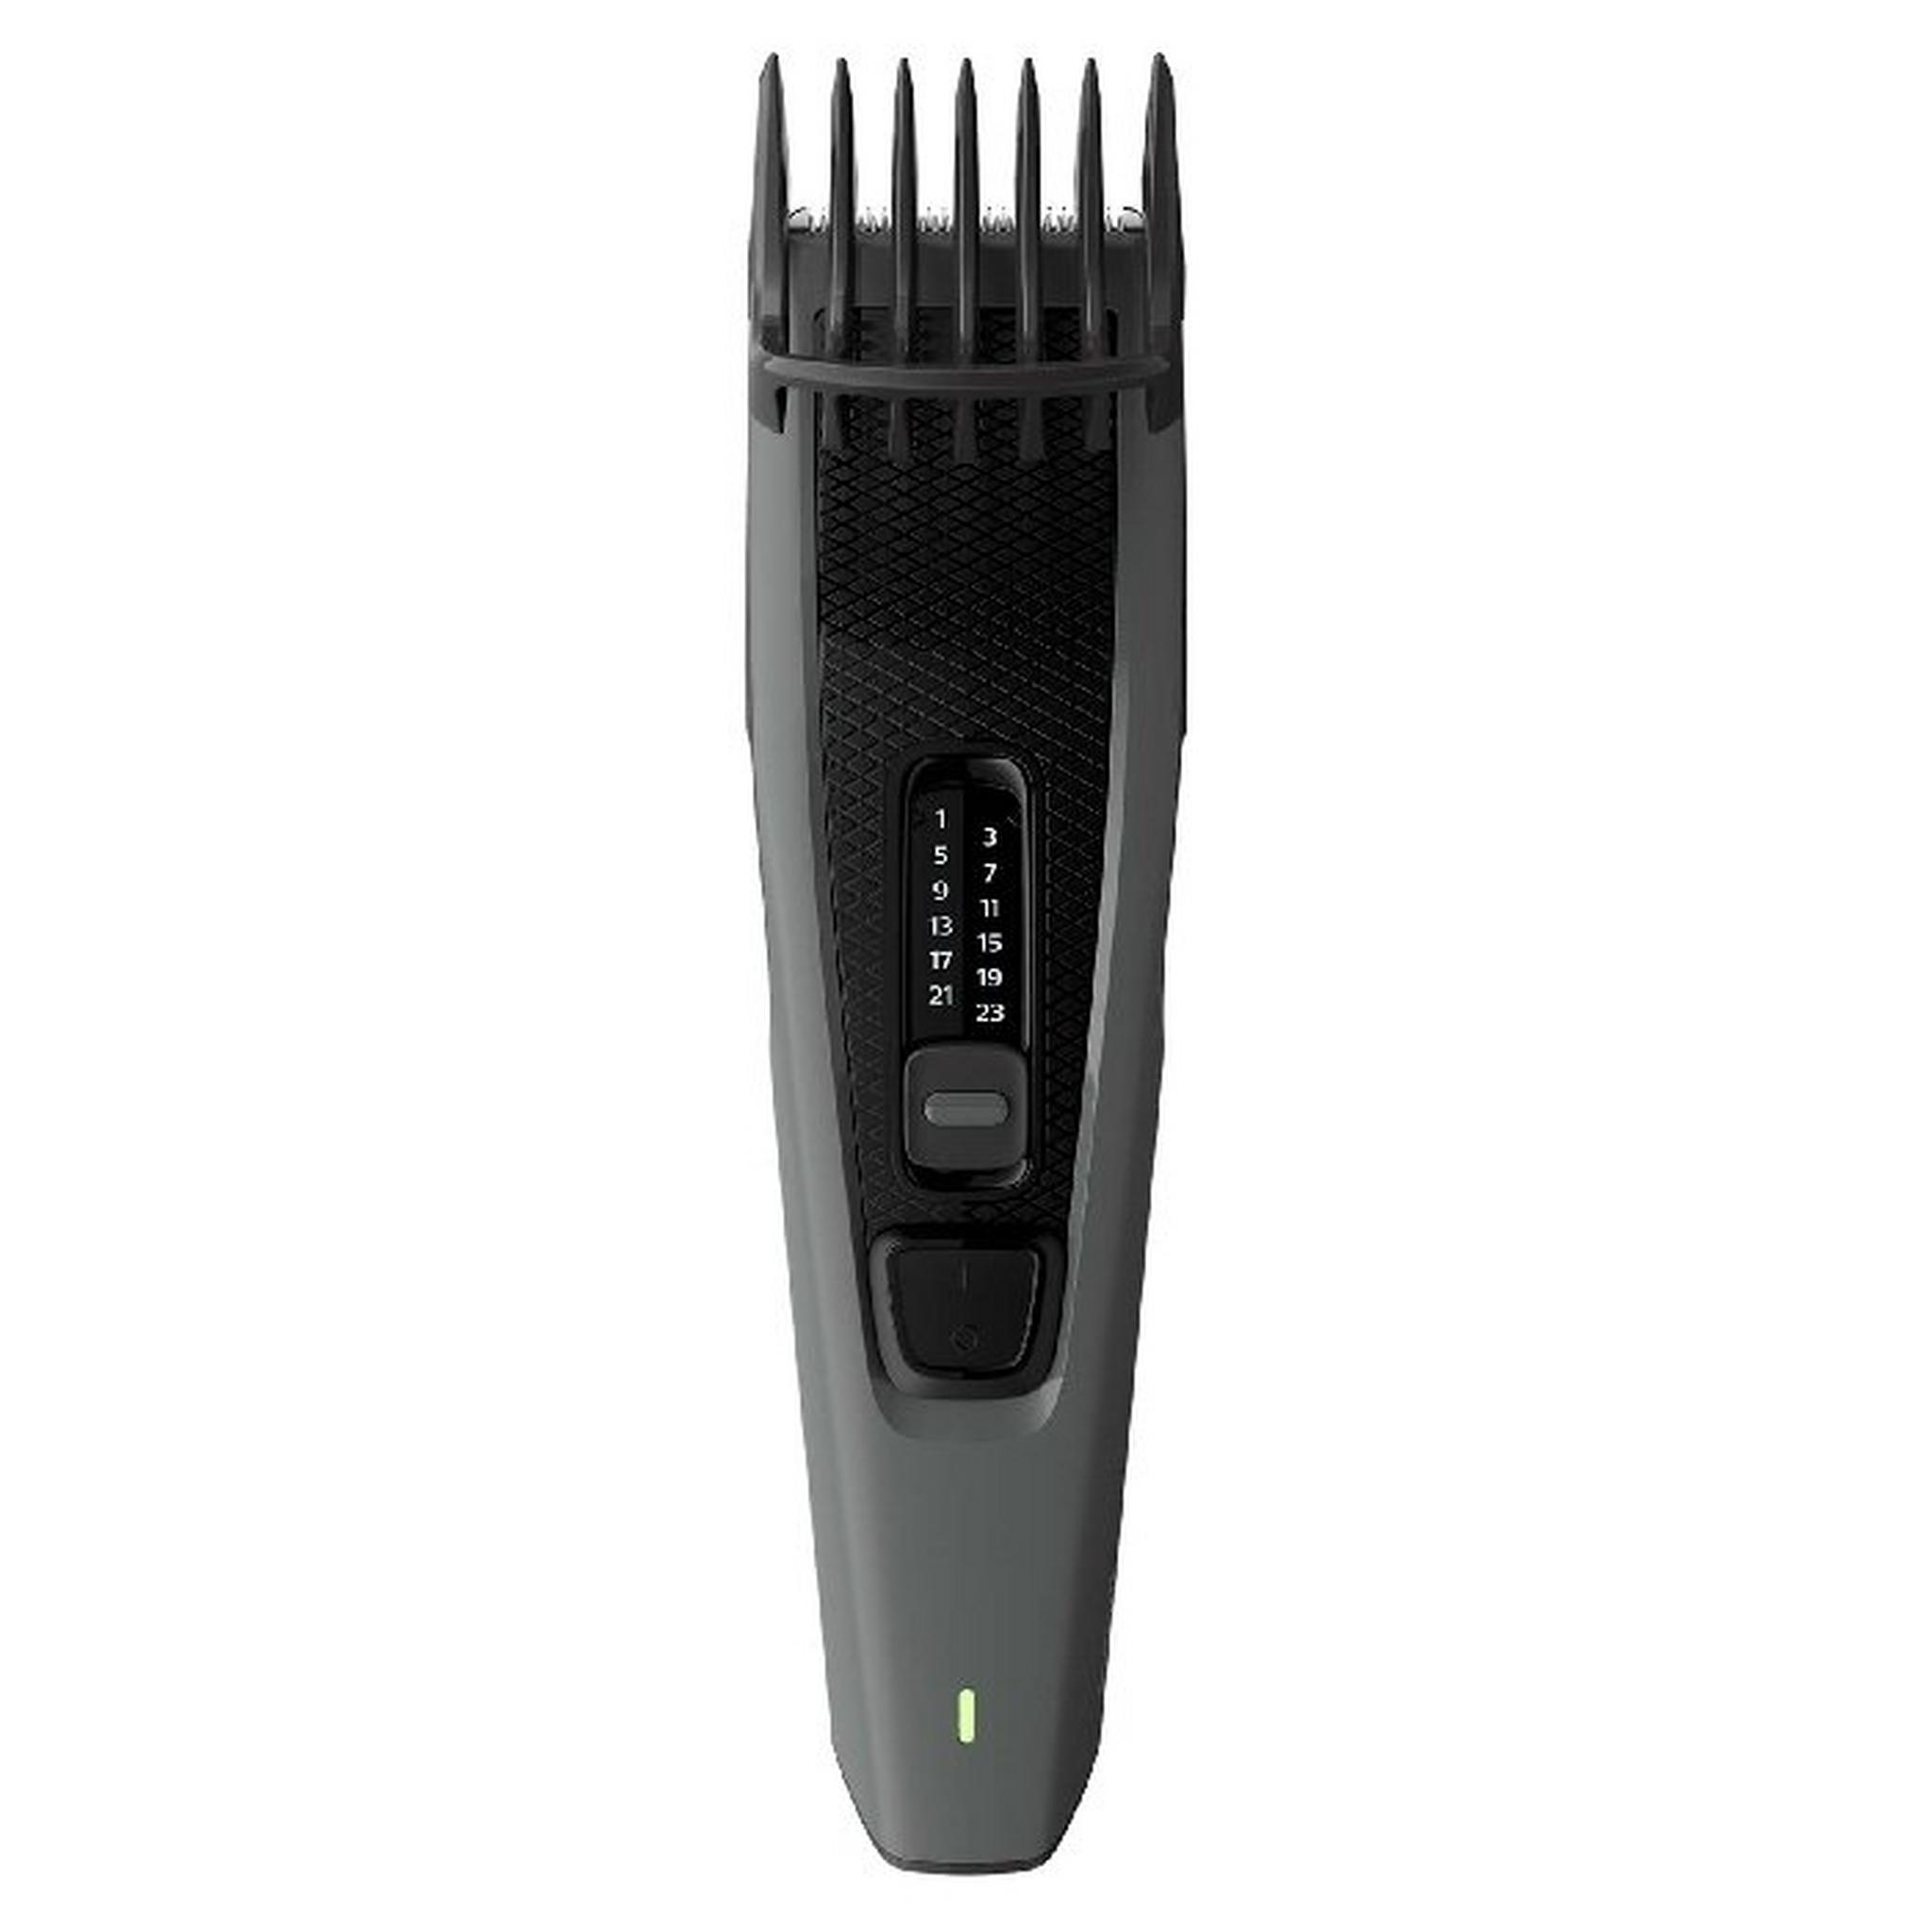 ماكينة قص الشعر ايزي اند كويك سيريز 3000 من فيليبس، HC3525/13 - اسود/رمادي